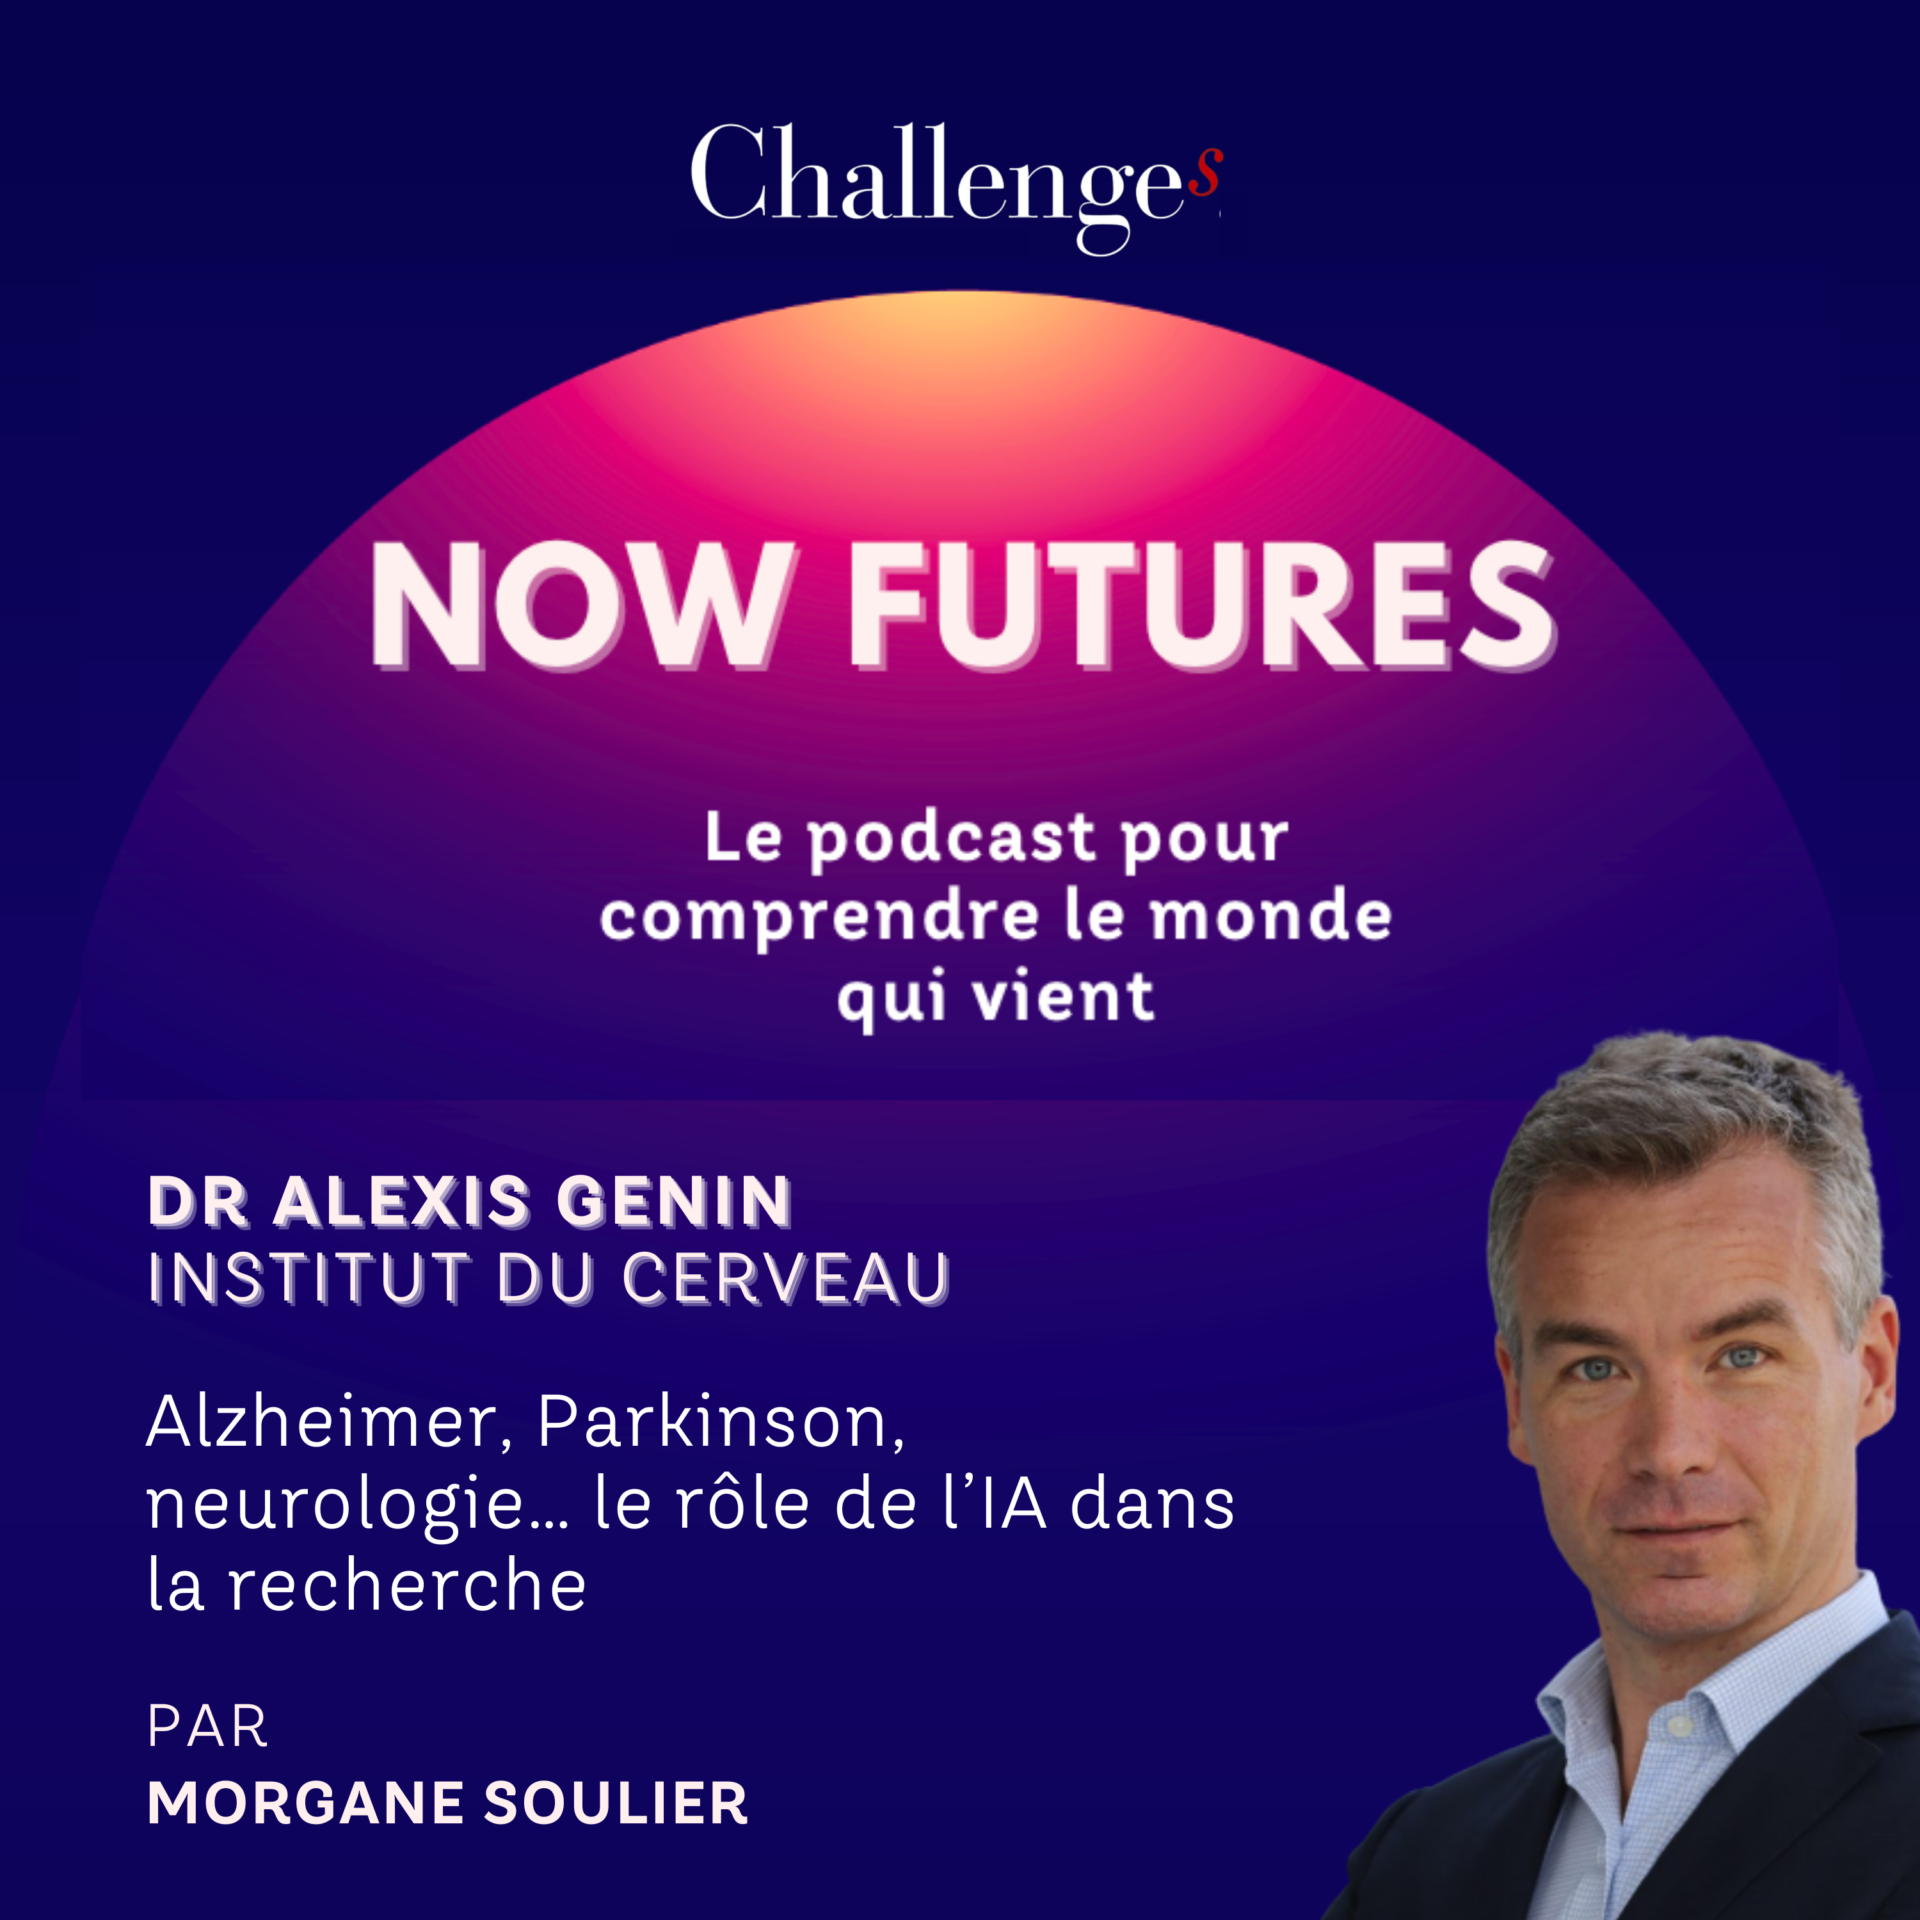 Le rôle de l’IA dans la recherche médicale par le Dr Alexis Genin